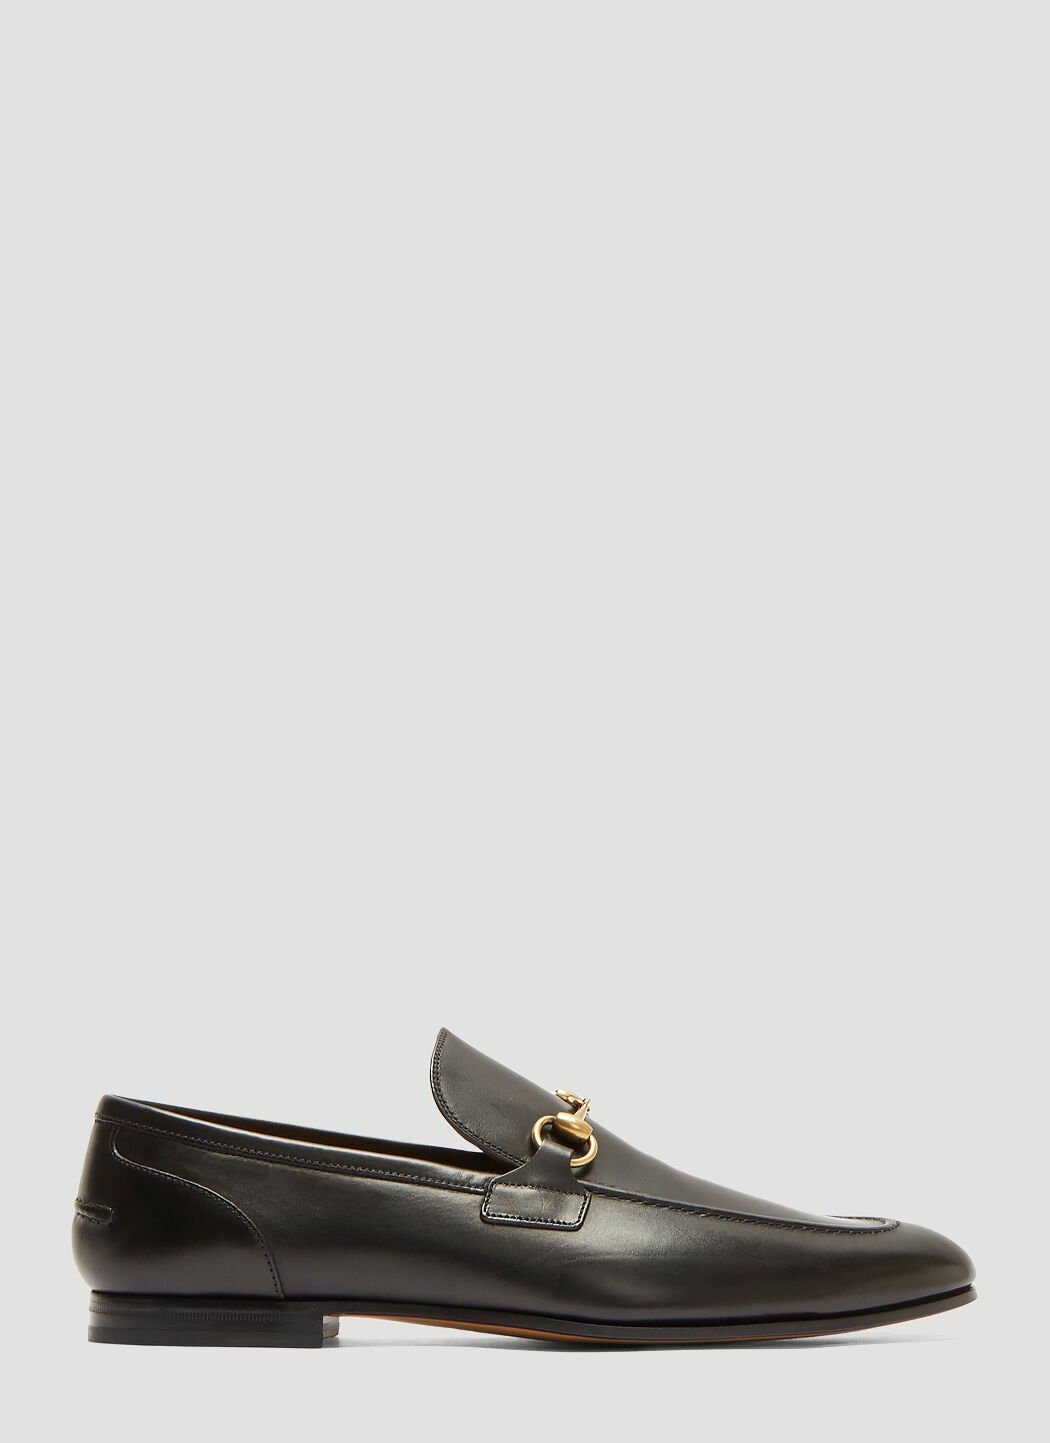 Thom Browne Jordaan Leather Loafers Black thb0155012